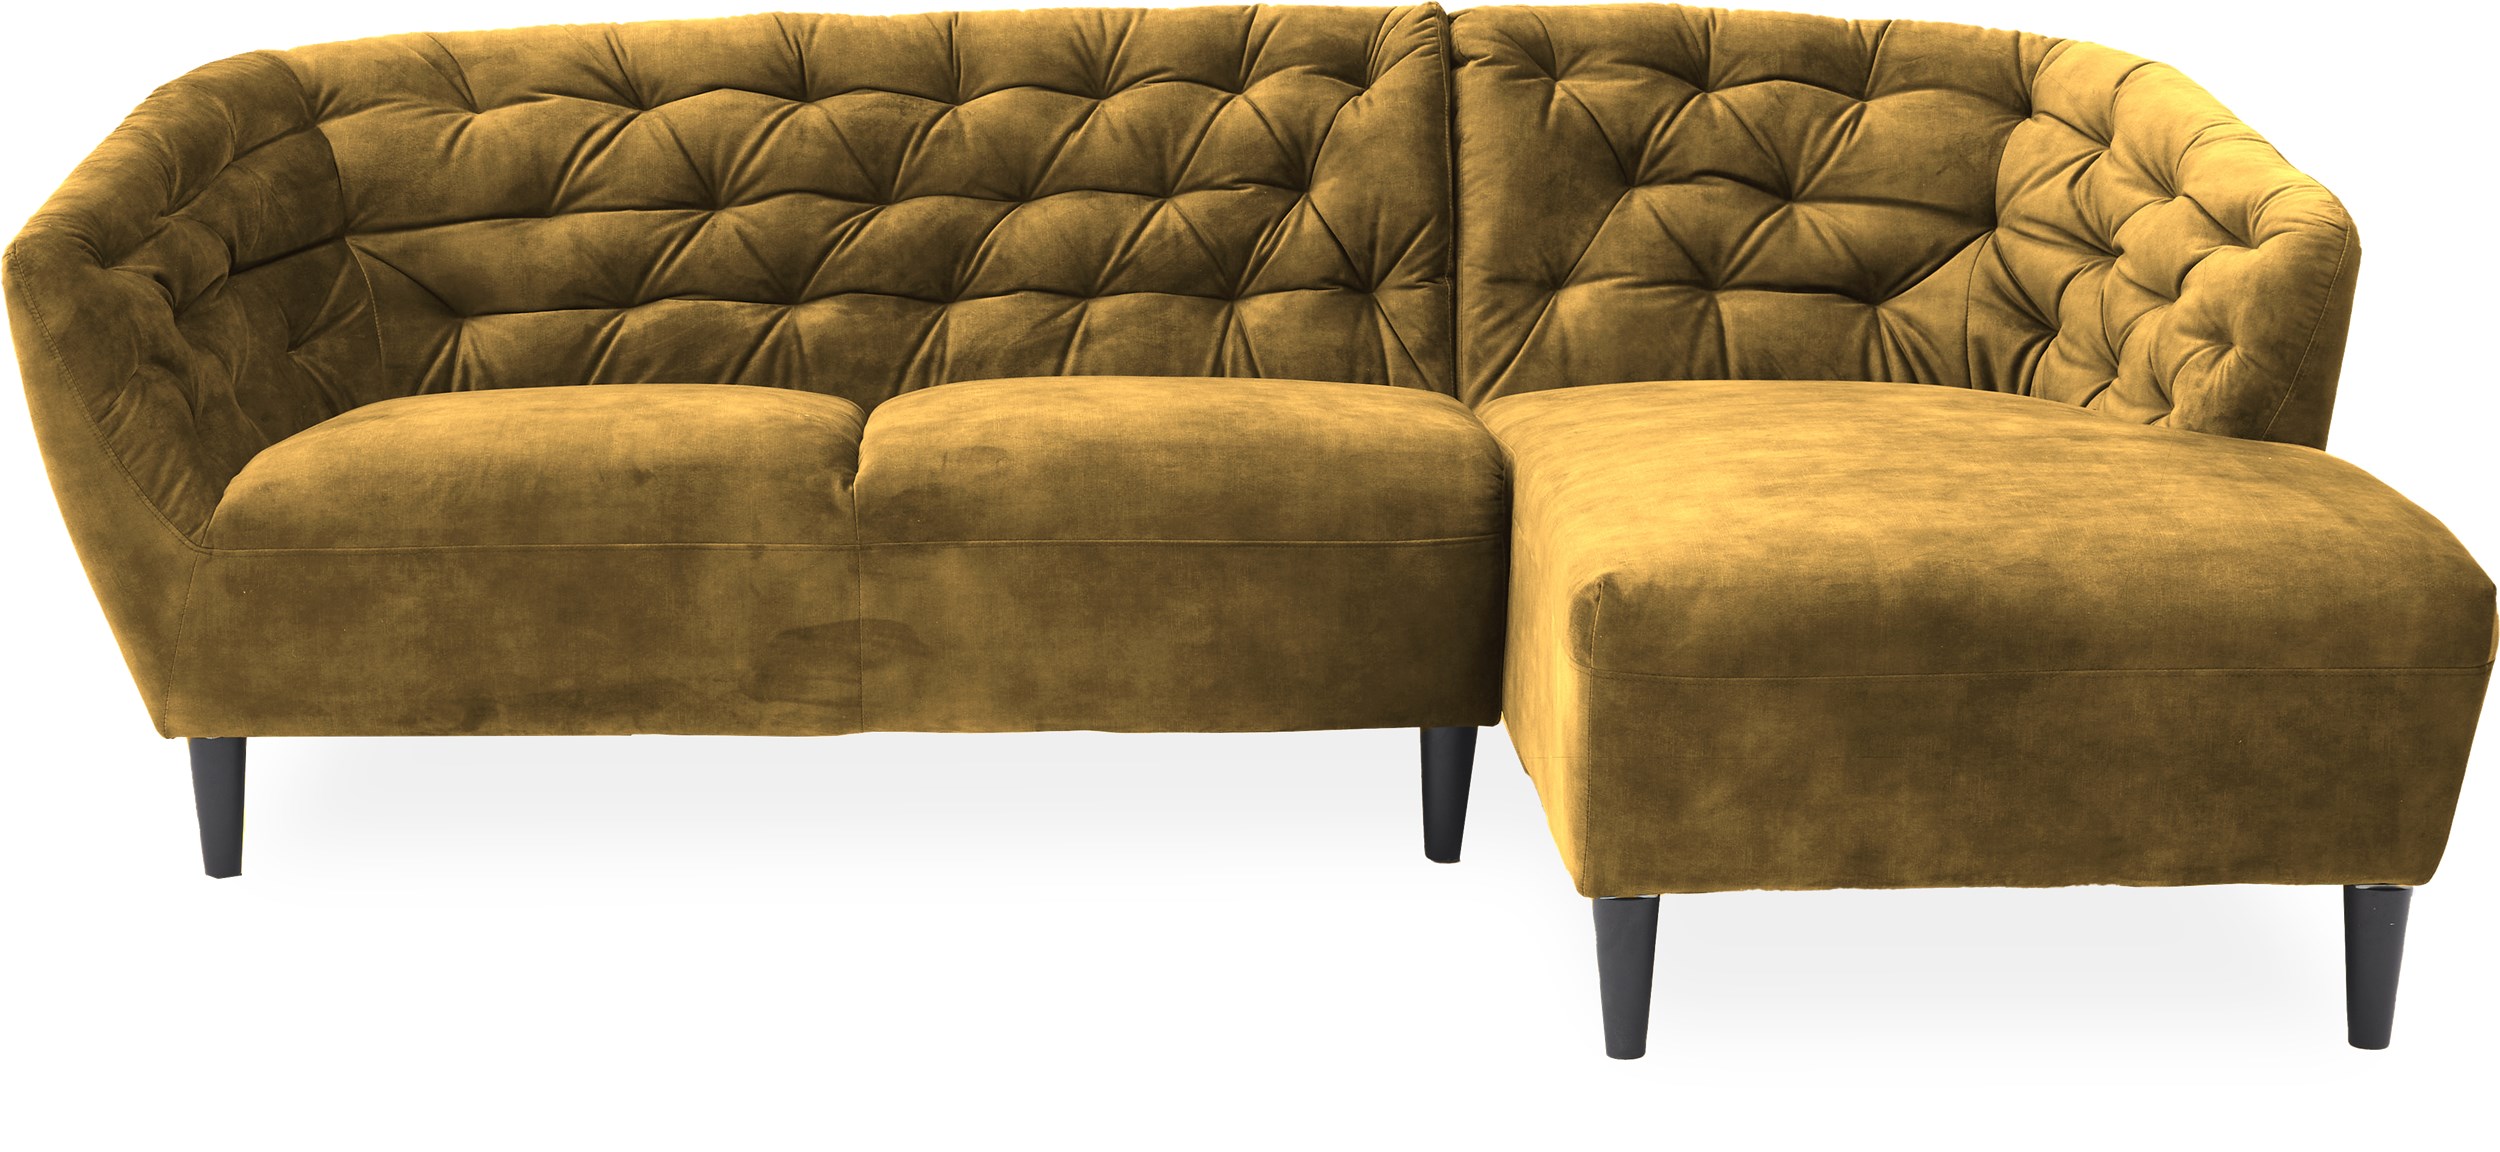 Ria højrevendt sofa med chaiselong